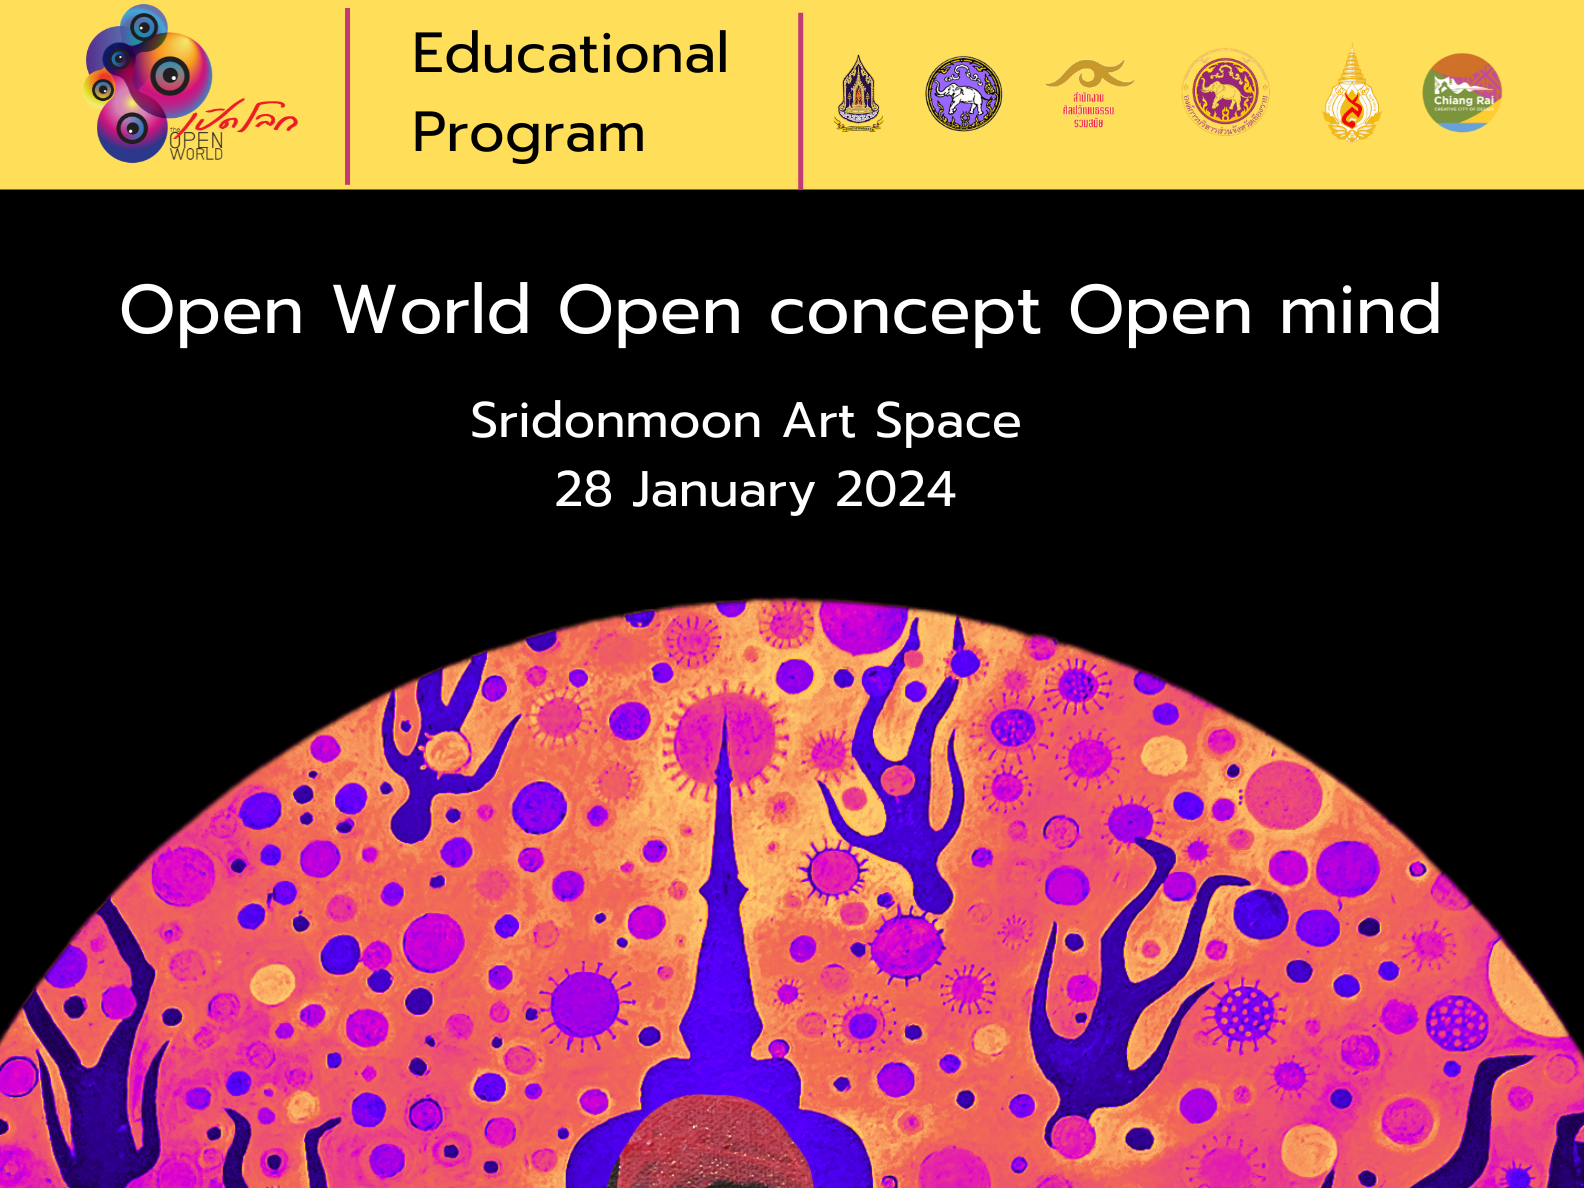 เชิญเข้าร่วมกิจกรรมเสวนา เรื่อง  เปิดโลก เปิดความคิด เปิดใจ Open World Open concept Open mind ภายใต้งานมหกรรมศิลปะร่วมสมัยนานาชาติ ไทยแลนด์เบียนนาเล่ เชียงราย 2023